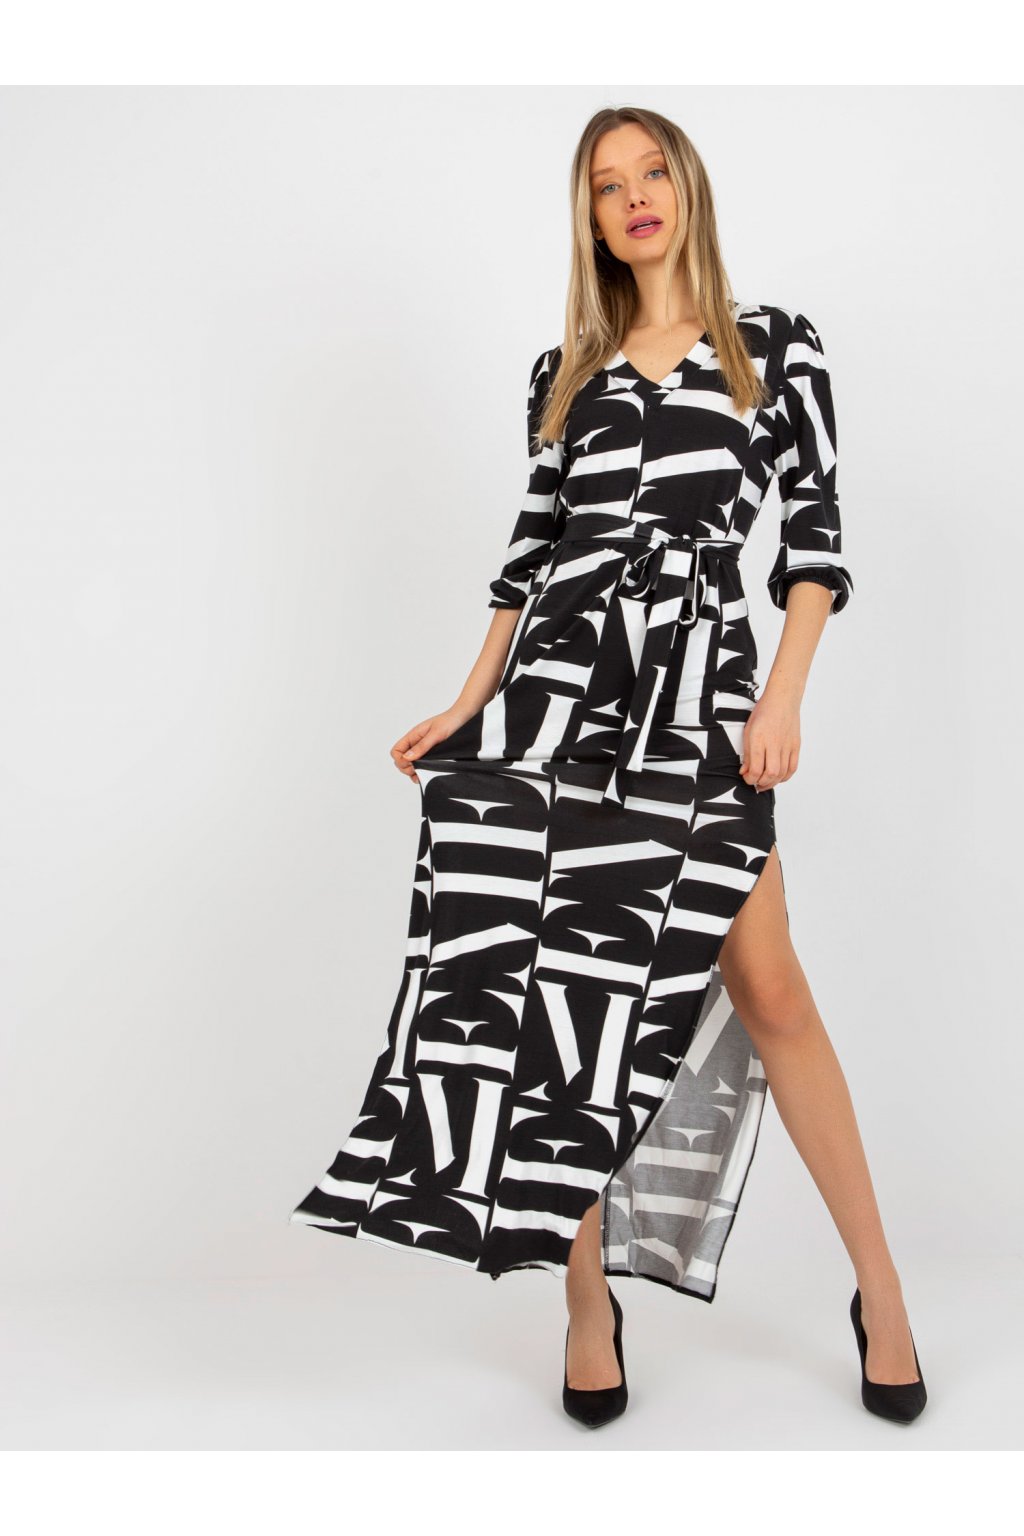 Dámske čierno-biele šaty s podtlačeným vzorom LK-SK-509249.87P